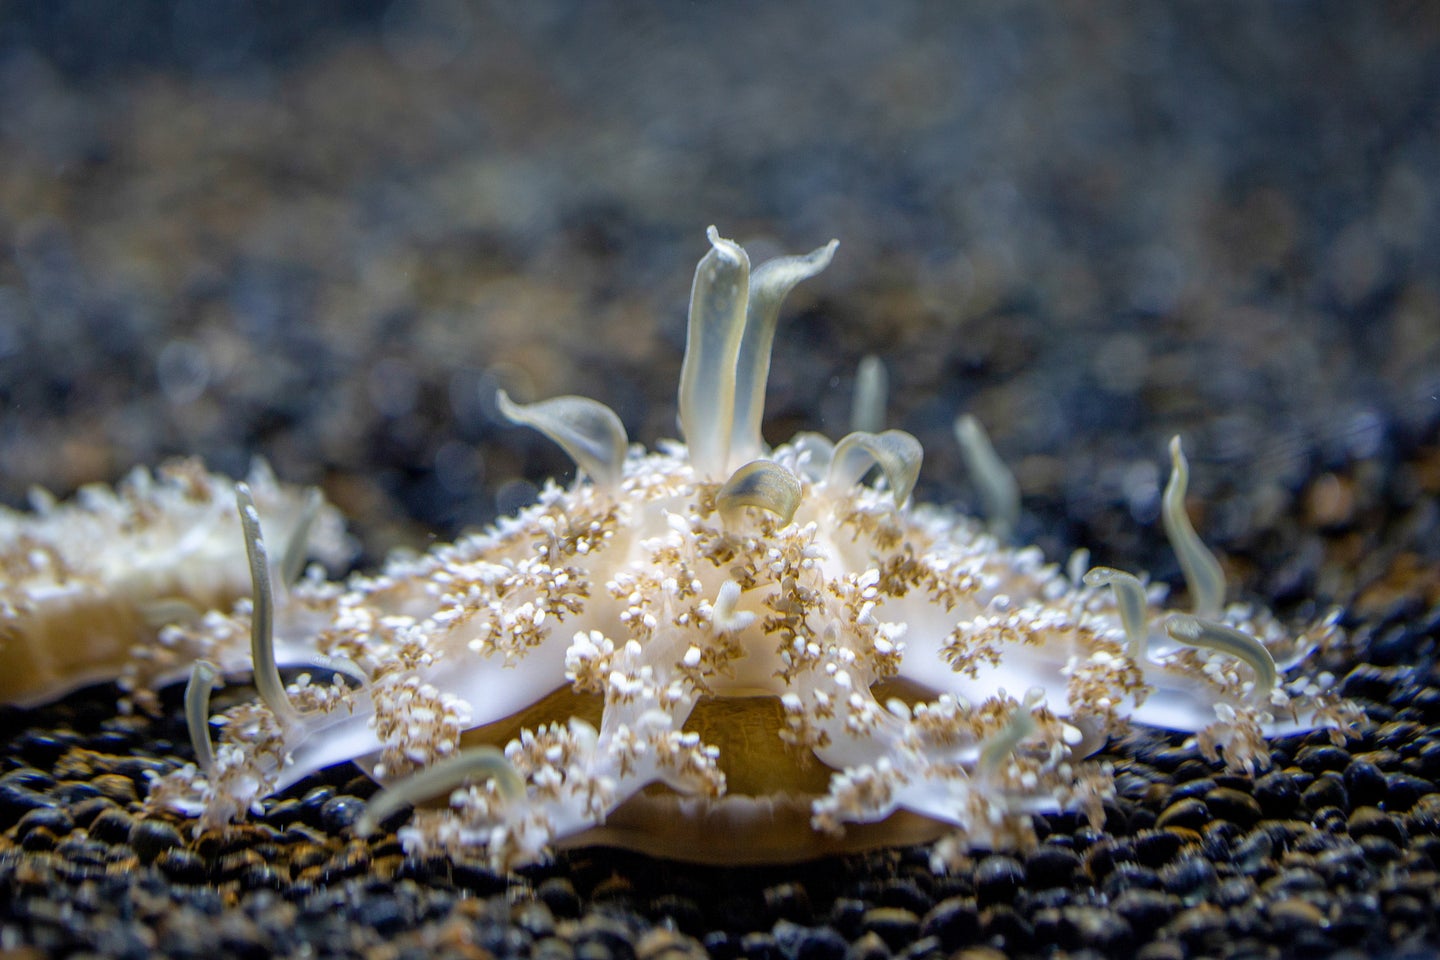 cassiopea jellyfish